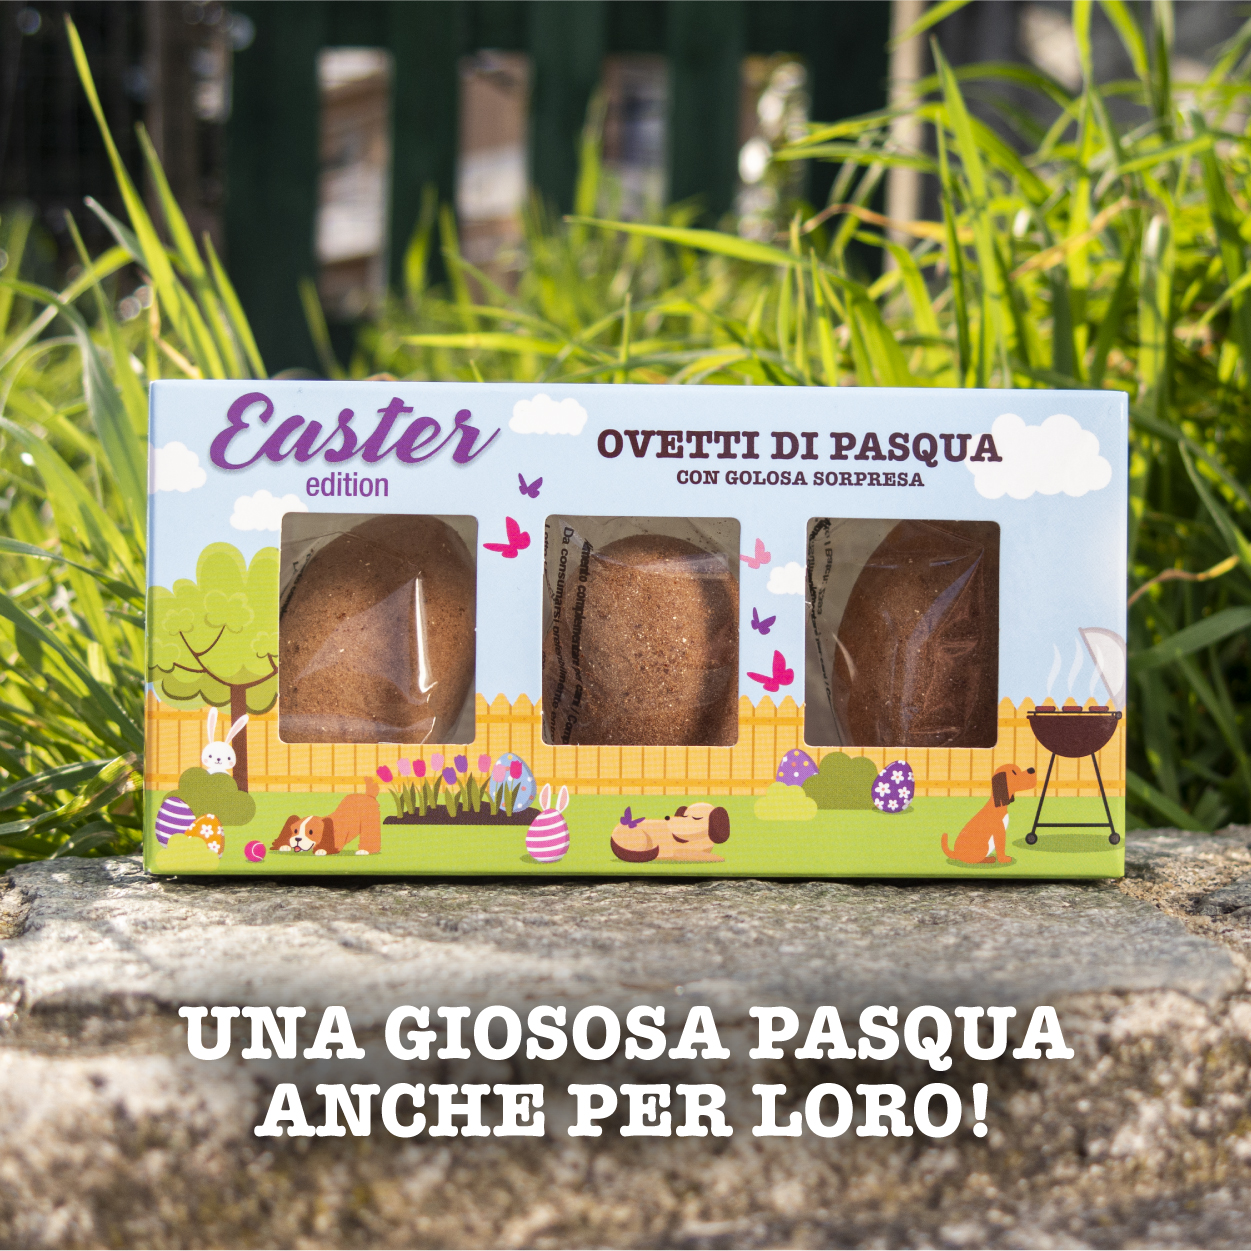 In The Nature® Easter edition: Ovetti di Pasqua